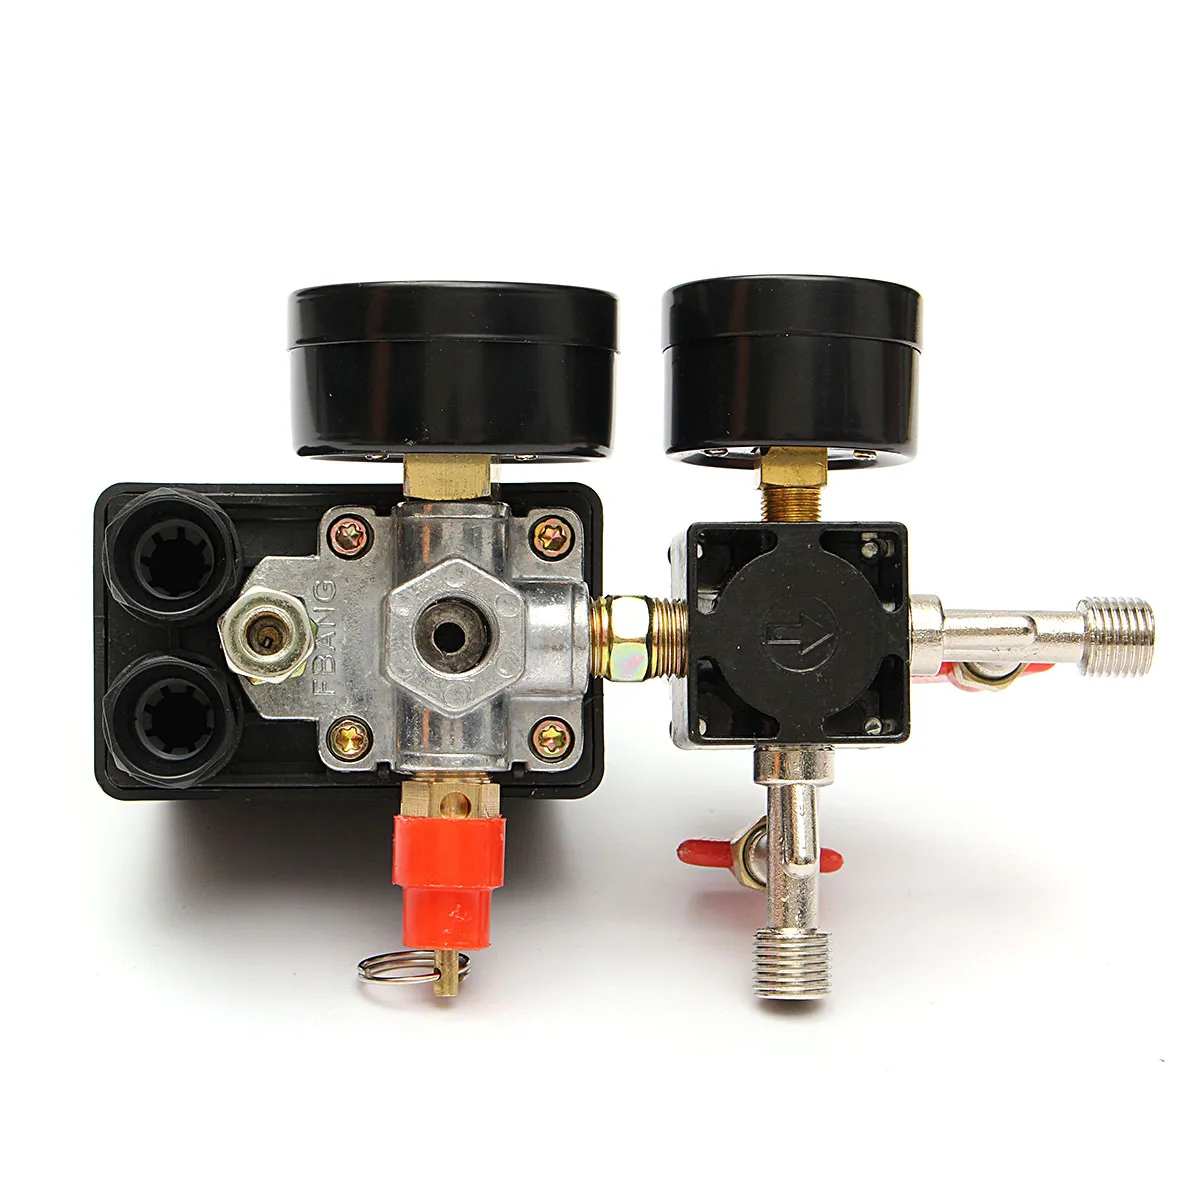 240 в регулятор Сверхмощный воздушный компрессор насос контроль давления переключатель воздушный регулирующий клапан насоса 95-125PSI с манометром